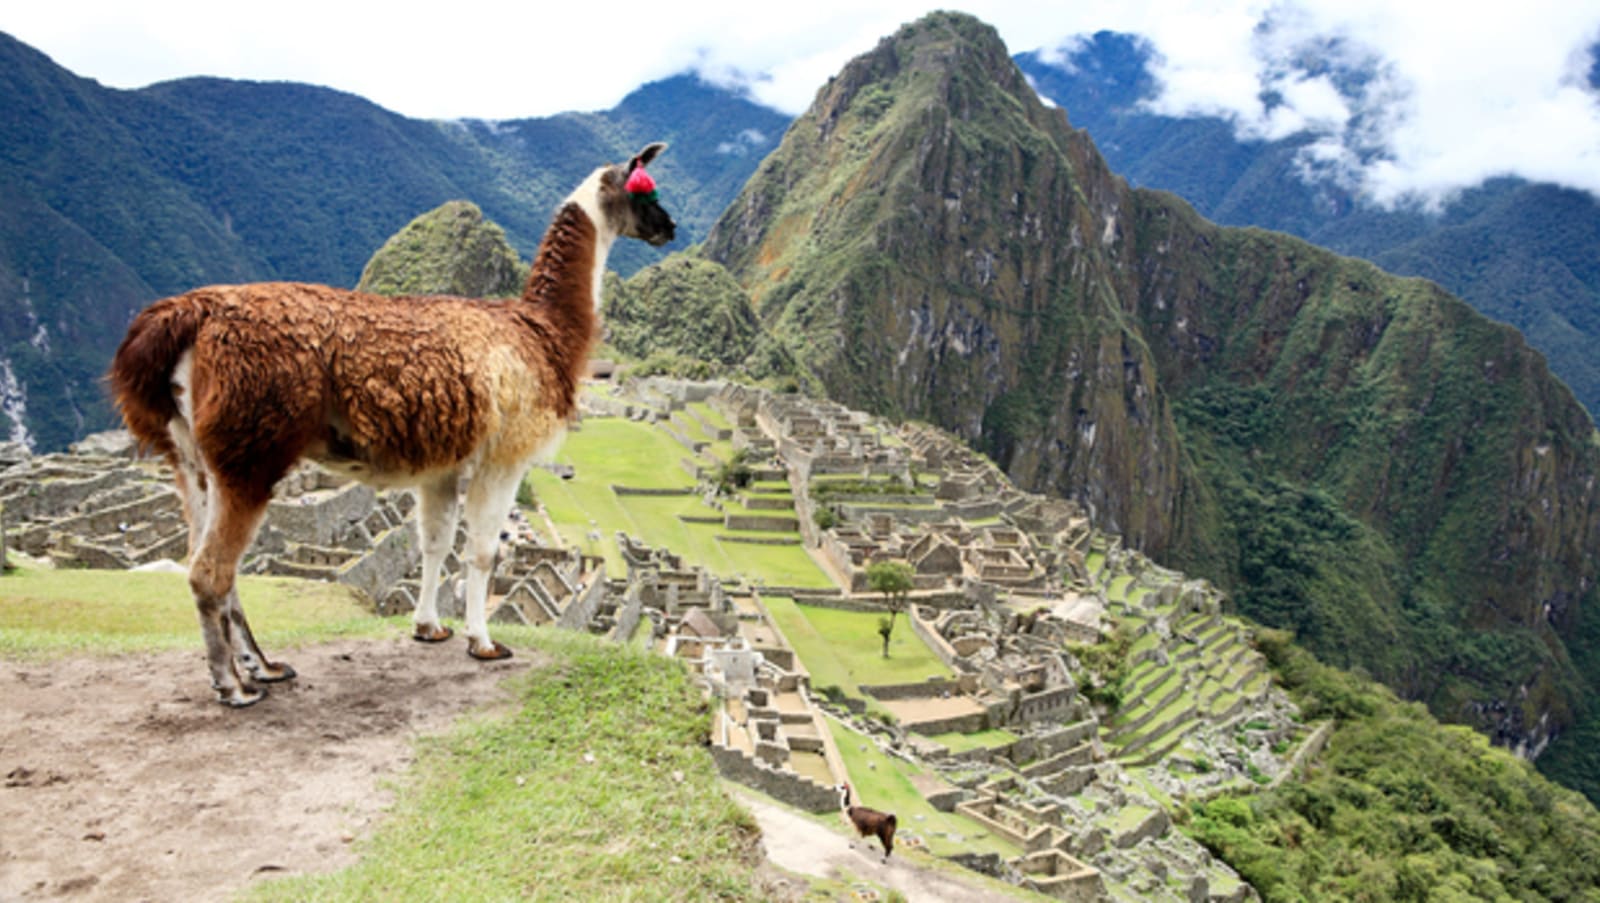 Llama staring majestically out over Machu Pichu - good Llama